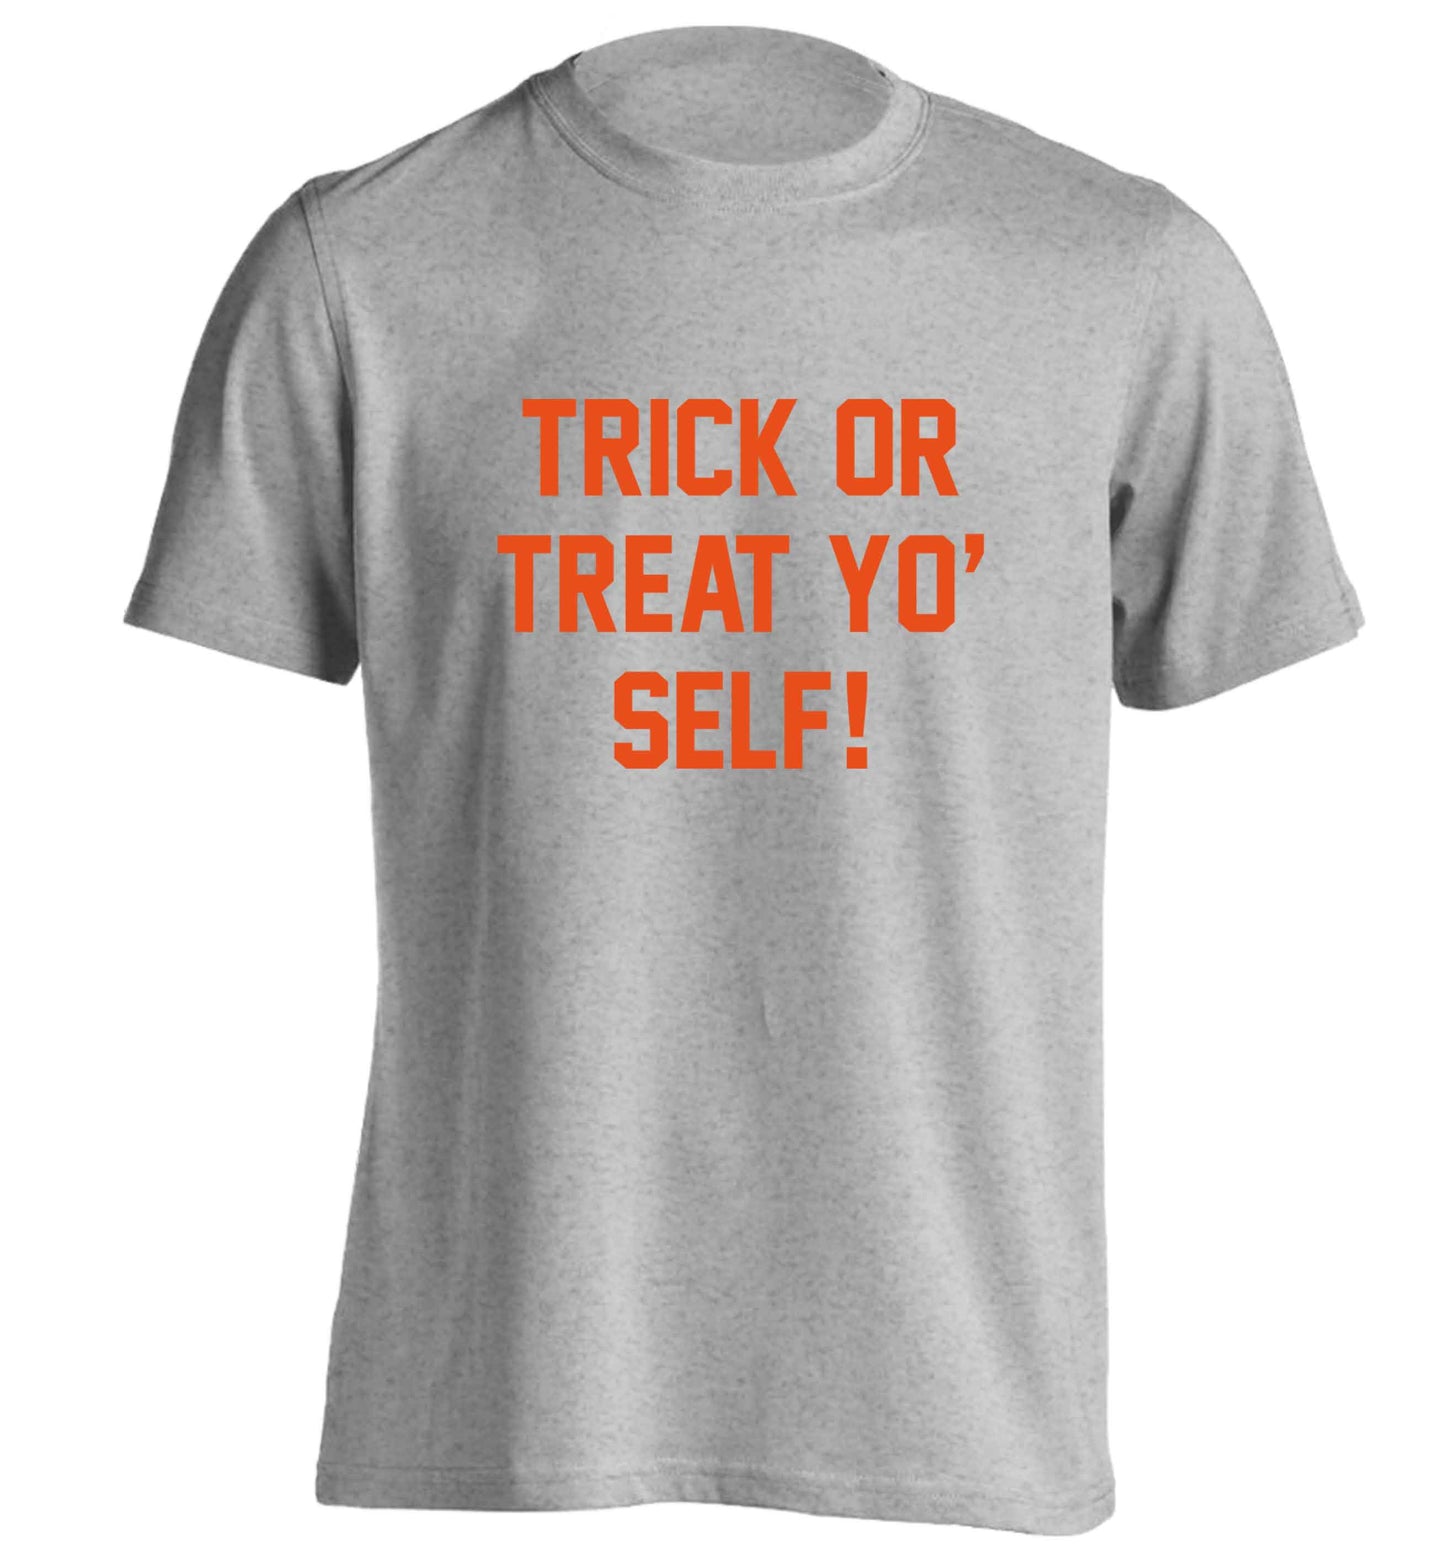 Trick or Treat Yo' Self adults unisex grey Tshirt 2XL